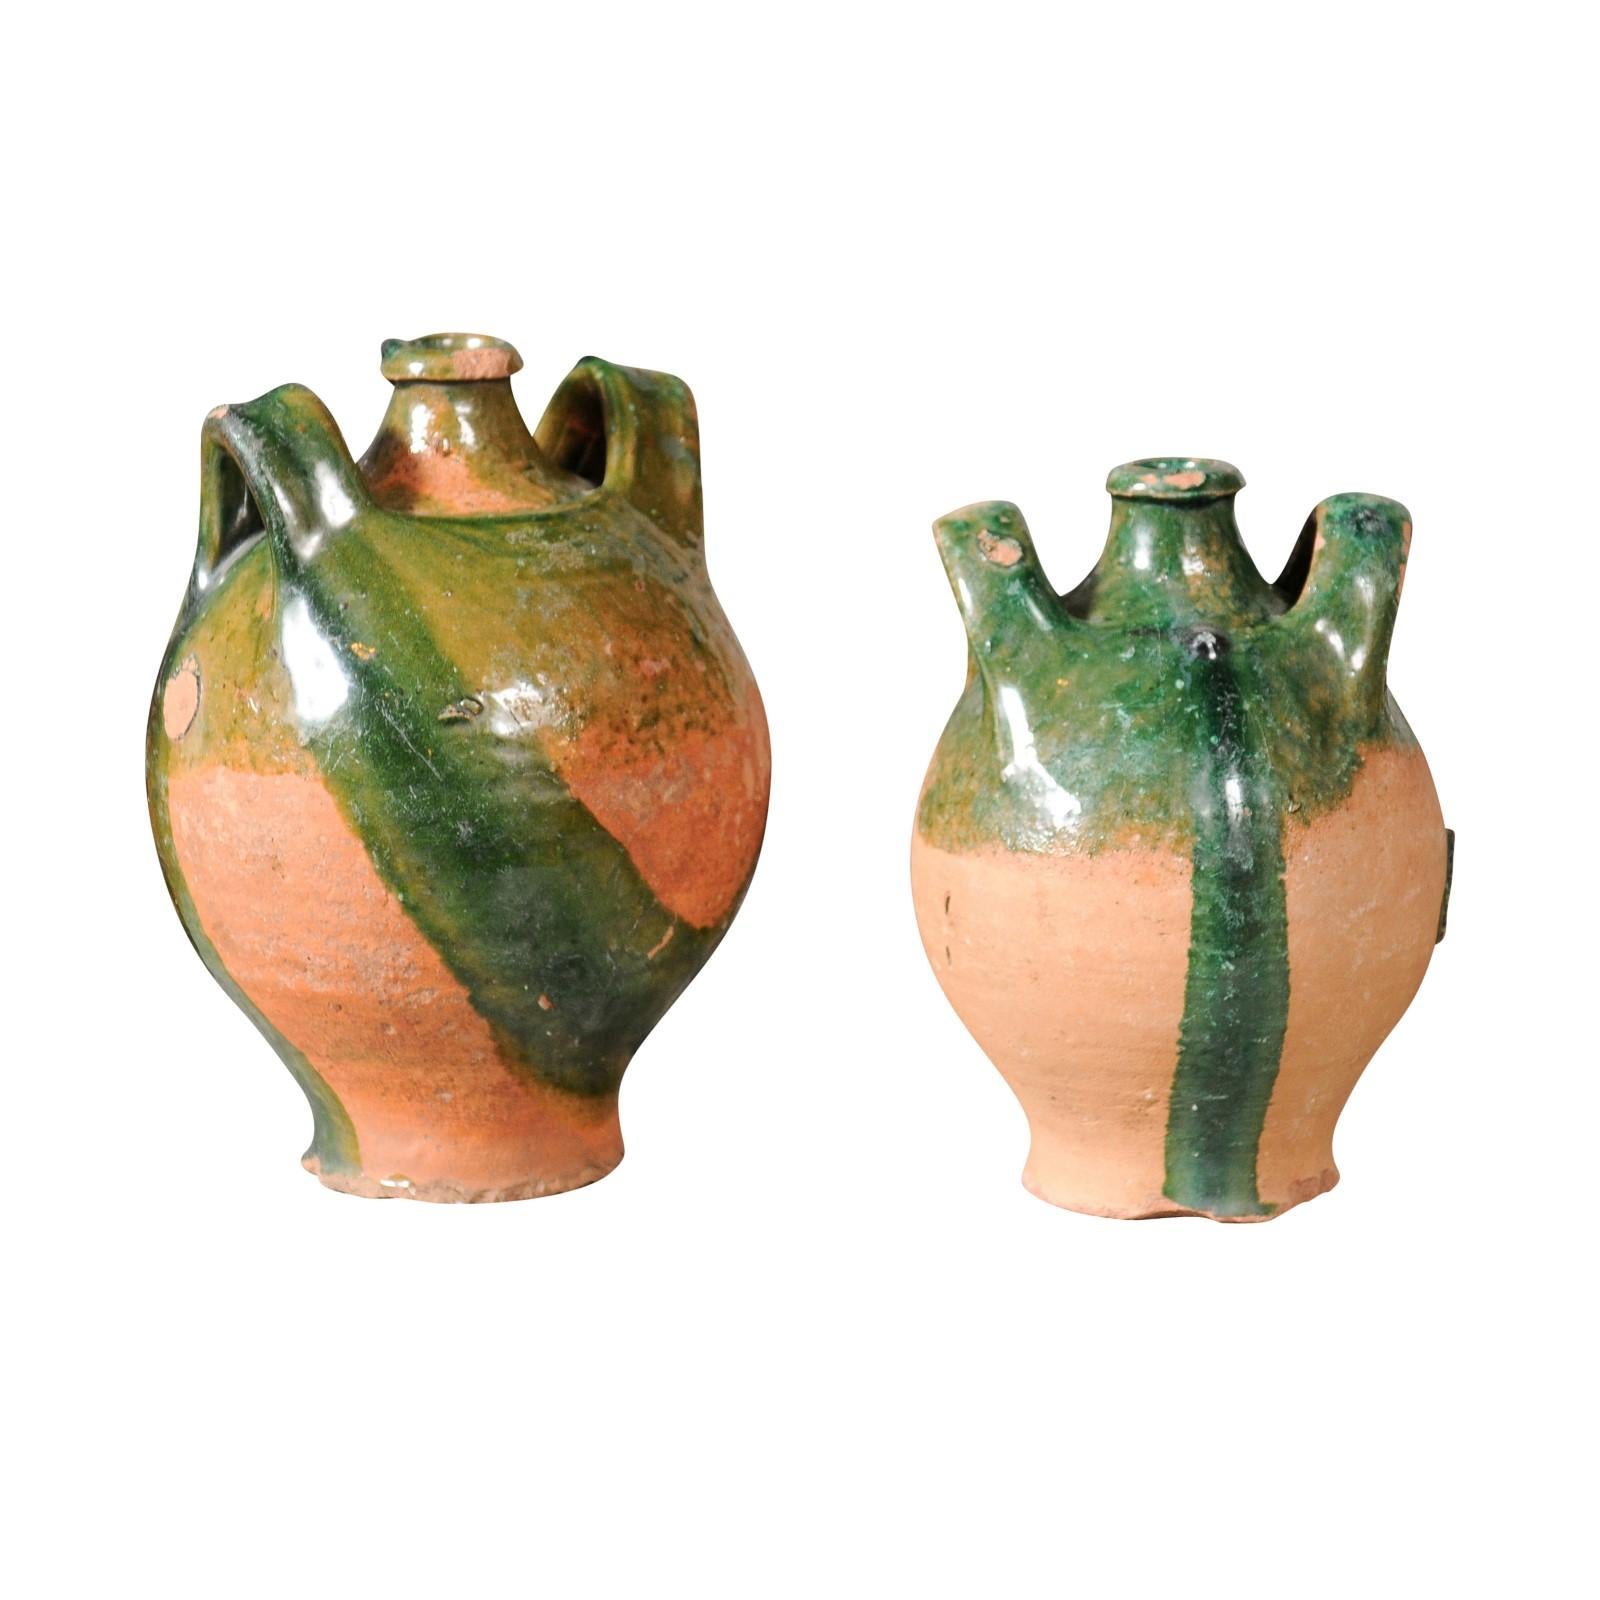 Deux pichets en poterie provinciale française de l'époque Napoléon III, vers 1850, avec glaçure verte, goutte à goutte et poignées latérales flanquant le bec verseur central. Ils sont vendus à l'unité. Paire de cruches en poterie d'époque Napoléon